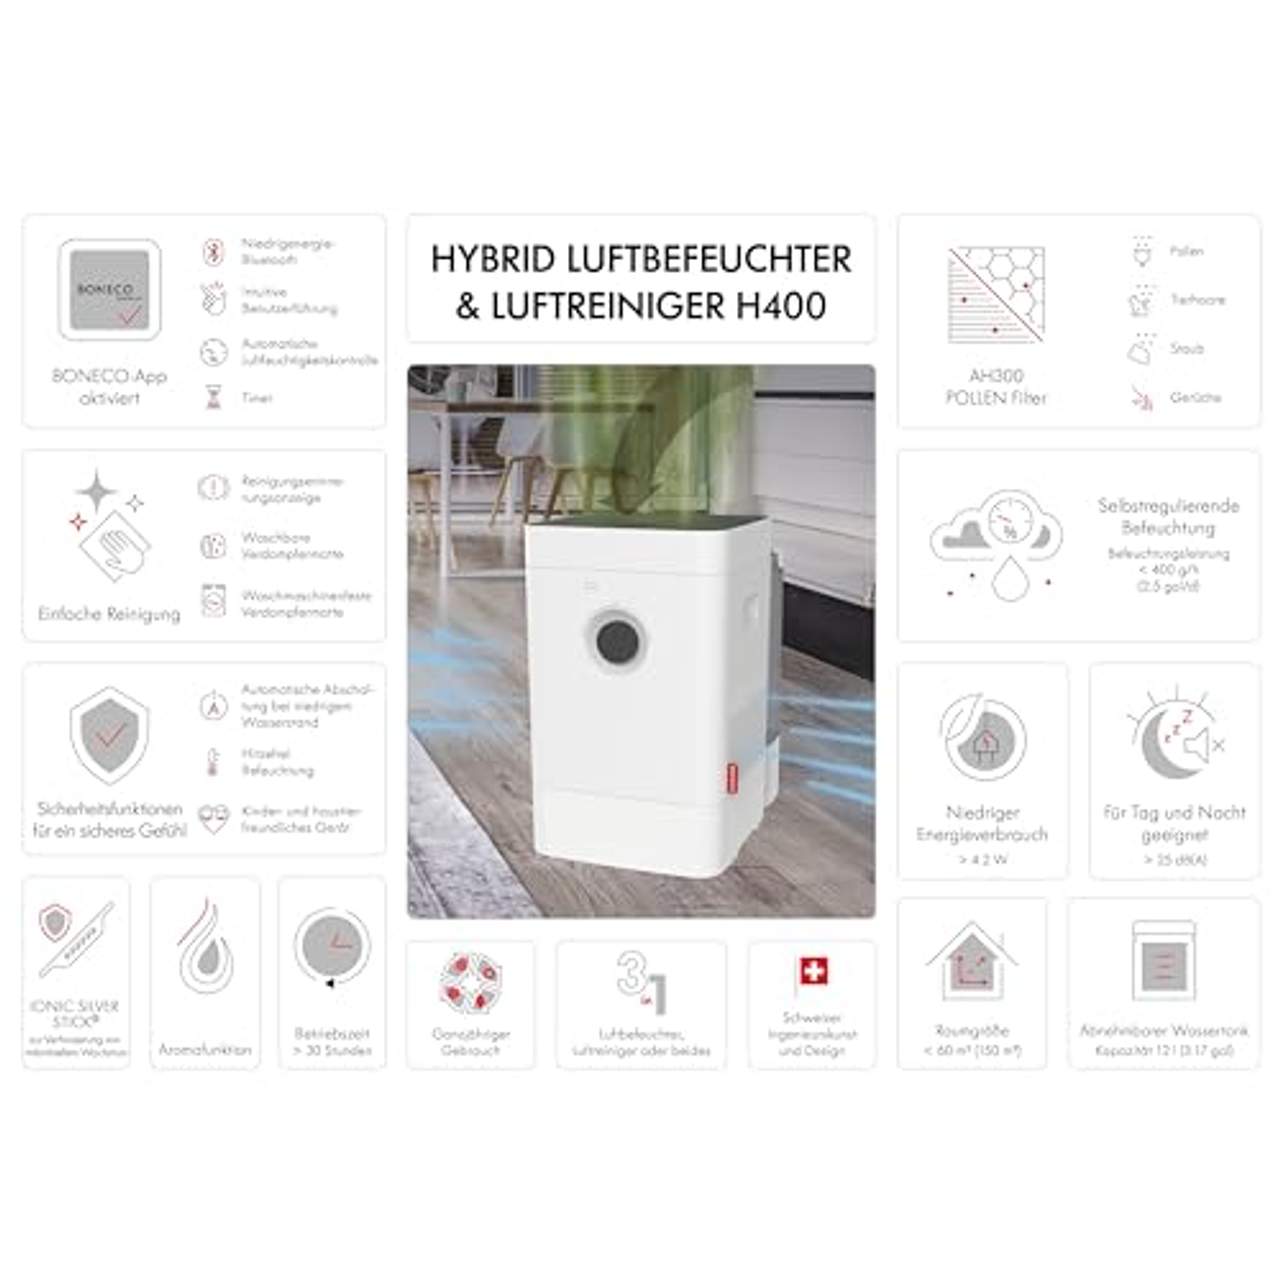 BONECO HYBRID Luftbefeuchter & Luftreiniger H400 – App gesteuert